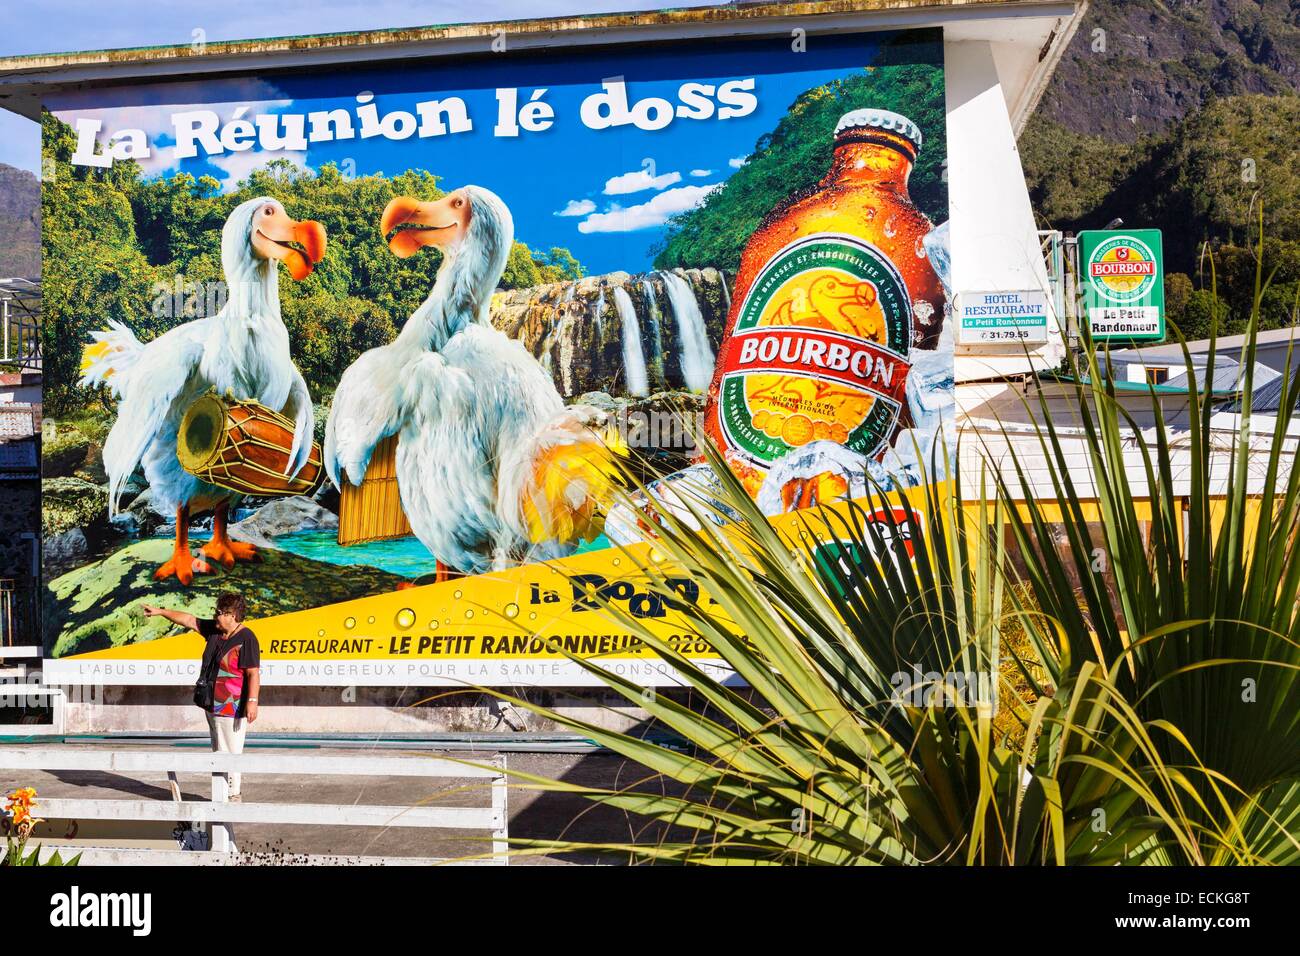 Francia, la Isla de la reunión, el Parque Nacional de la Reunion (la reunión), Parque Nacional de Circo de Cilaos, catalogada como Patrimonio de la Humanidad por la UNESCO, Cilaos, paisaje urbano, escena callejera de mujeres turistas delante de una señal de publicidad de una marca de cerveza local. Foto de stock